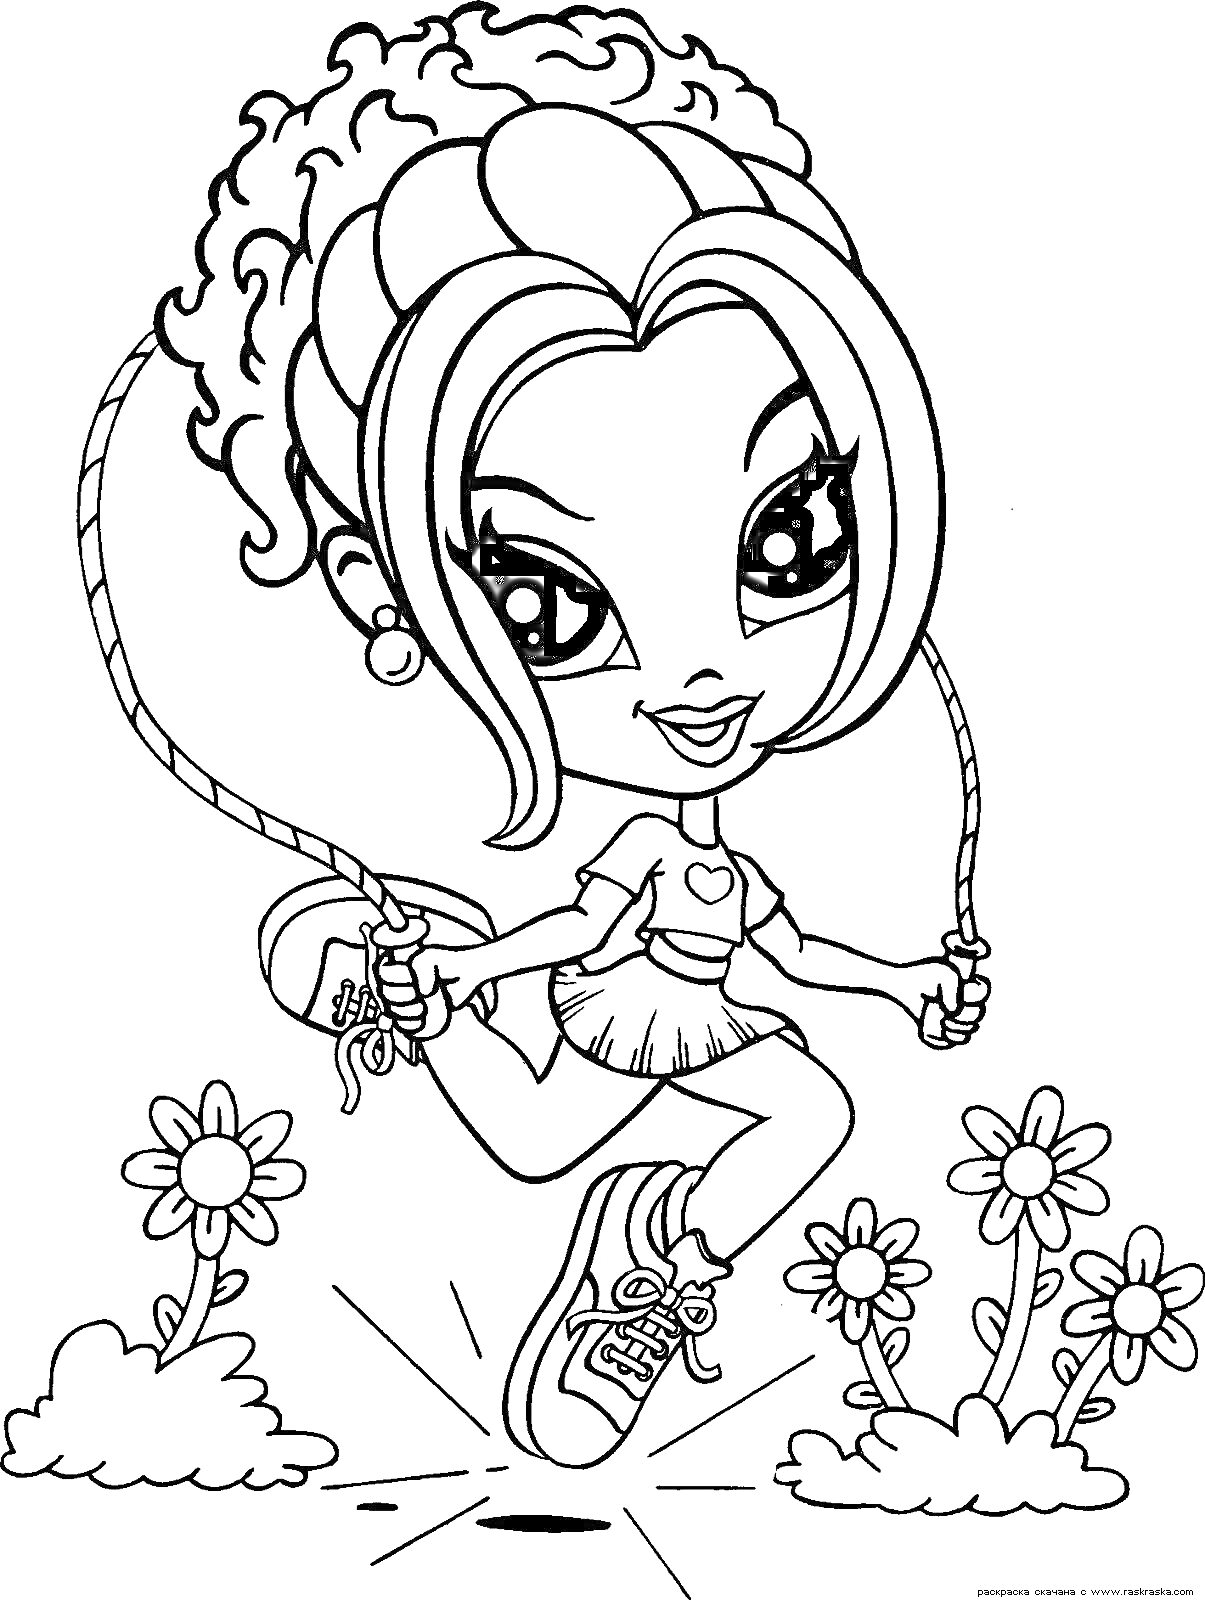 Раскраска Девочка с кудрявыми волосами, прыгает через скакалку, цветы на заднем плане